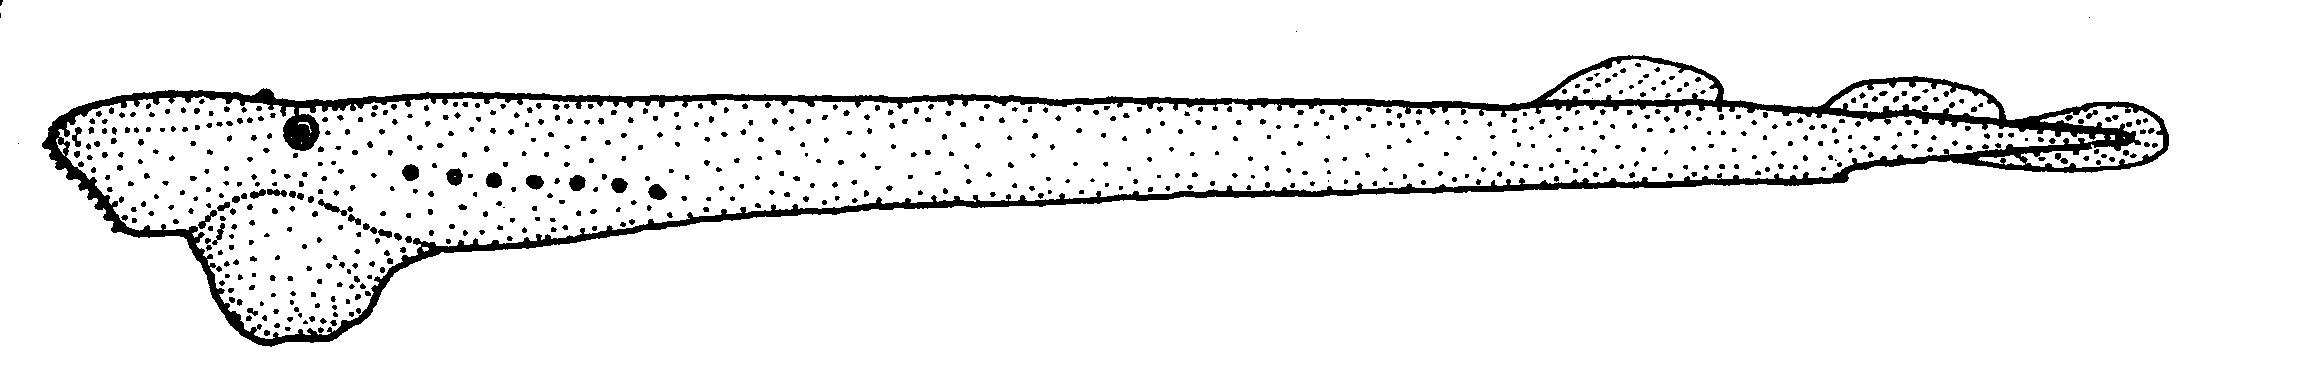  Geotria australis